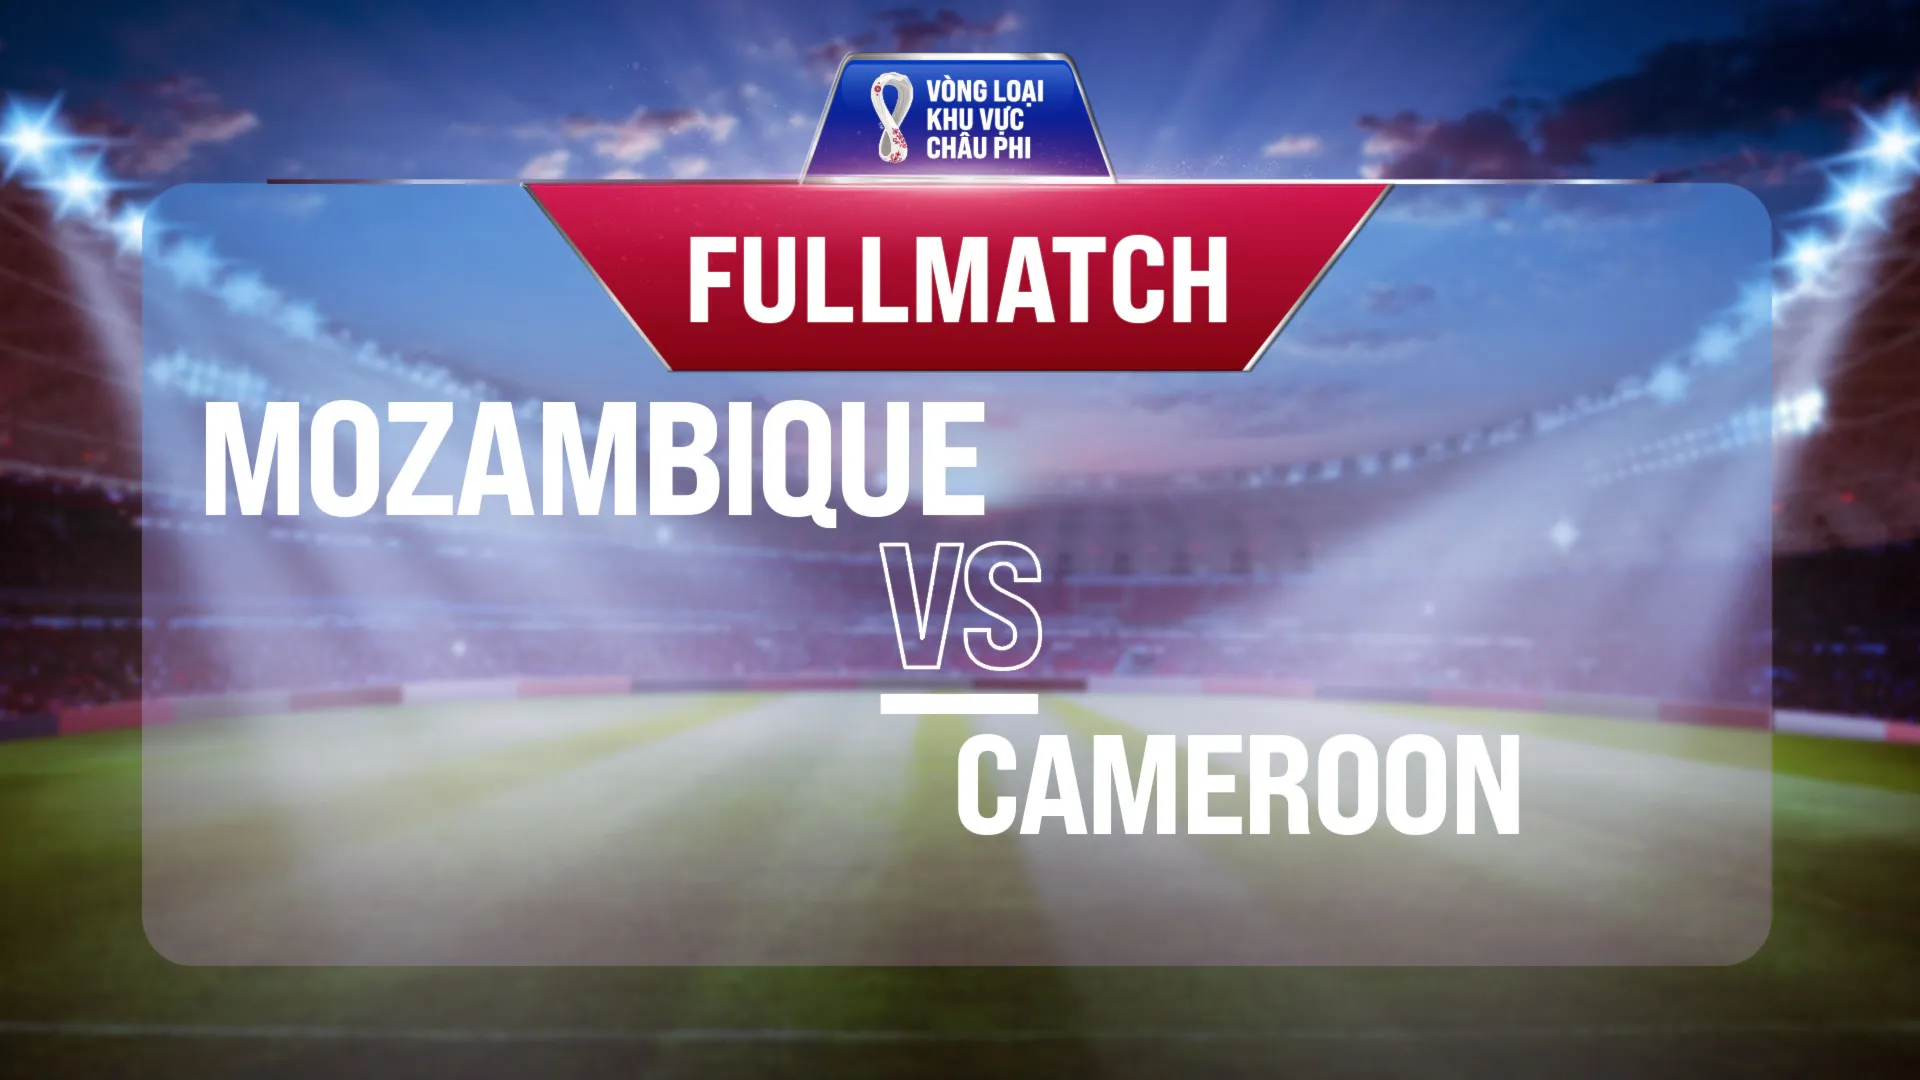 Full match Mozambique vs Cameroon (Lượt trận 4 Vòng Loại thứ 2 World Cup 2022 - Khu vực châu Phi)